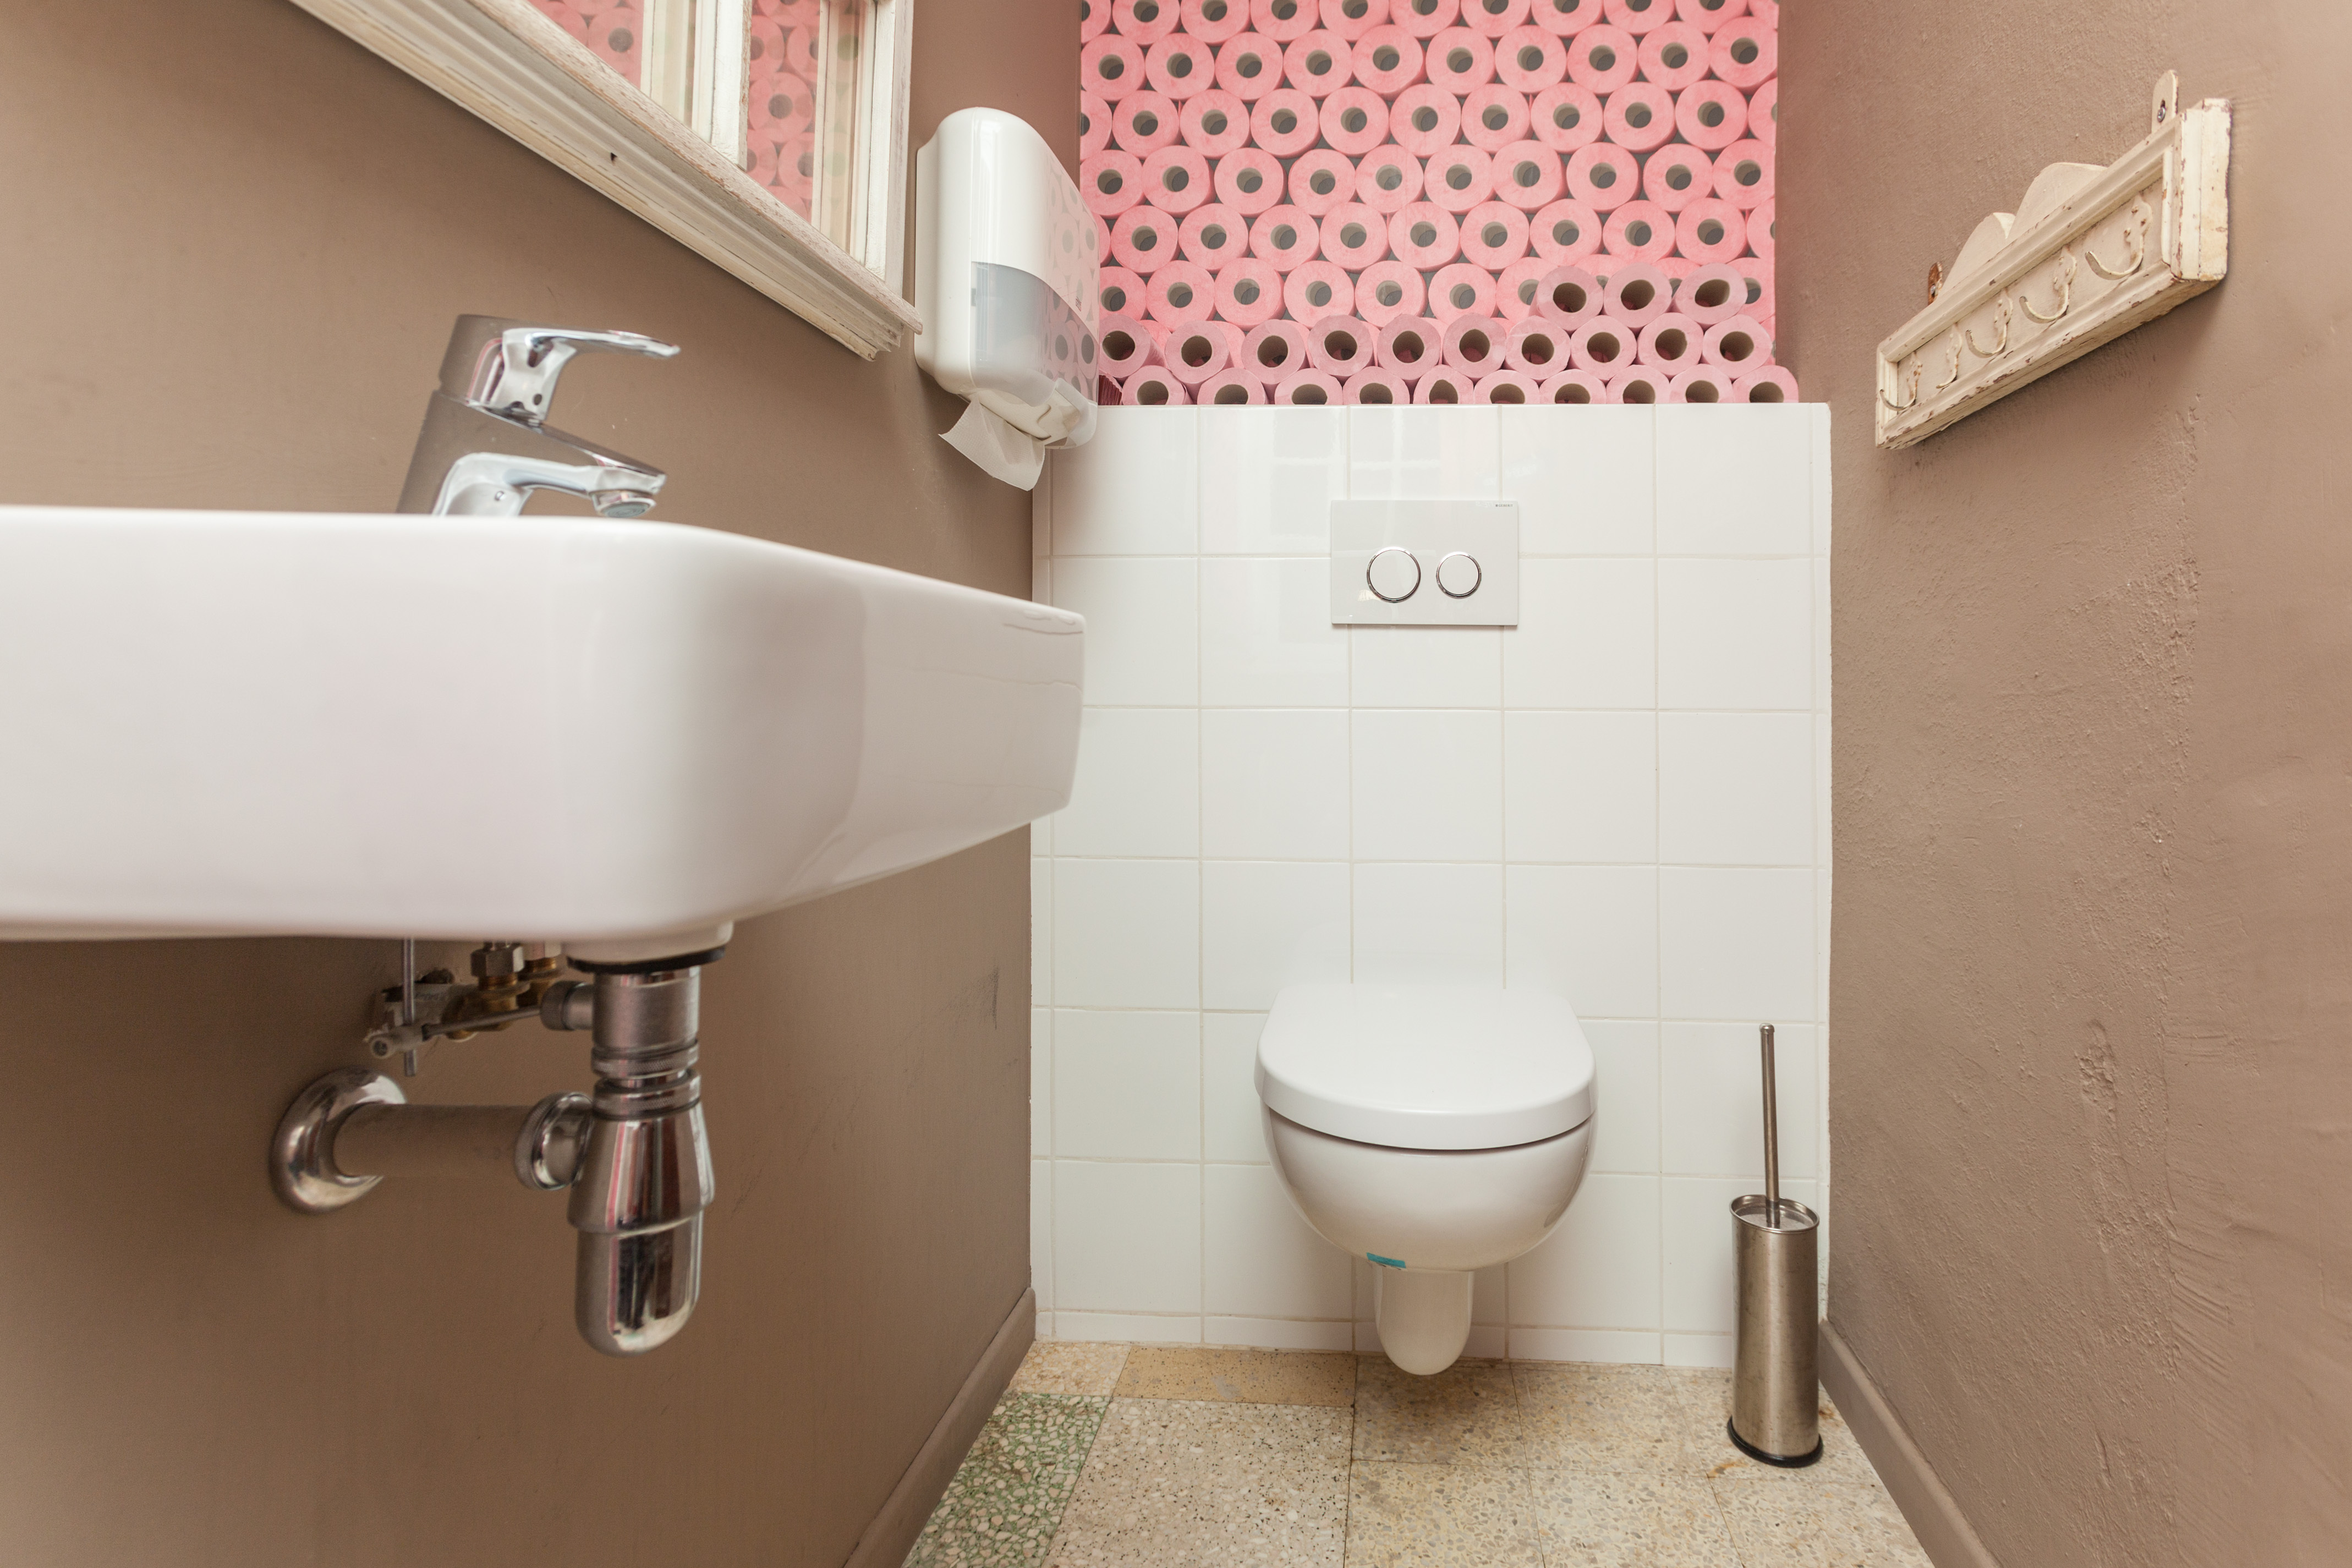 Diseño y funcionalidad en un wc para personas con discapacidad